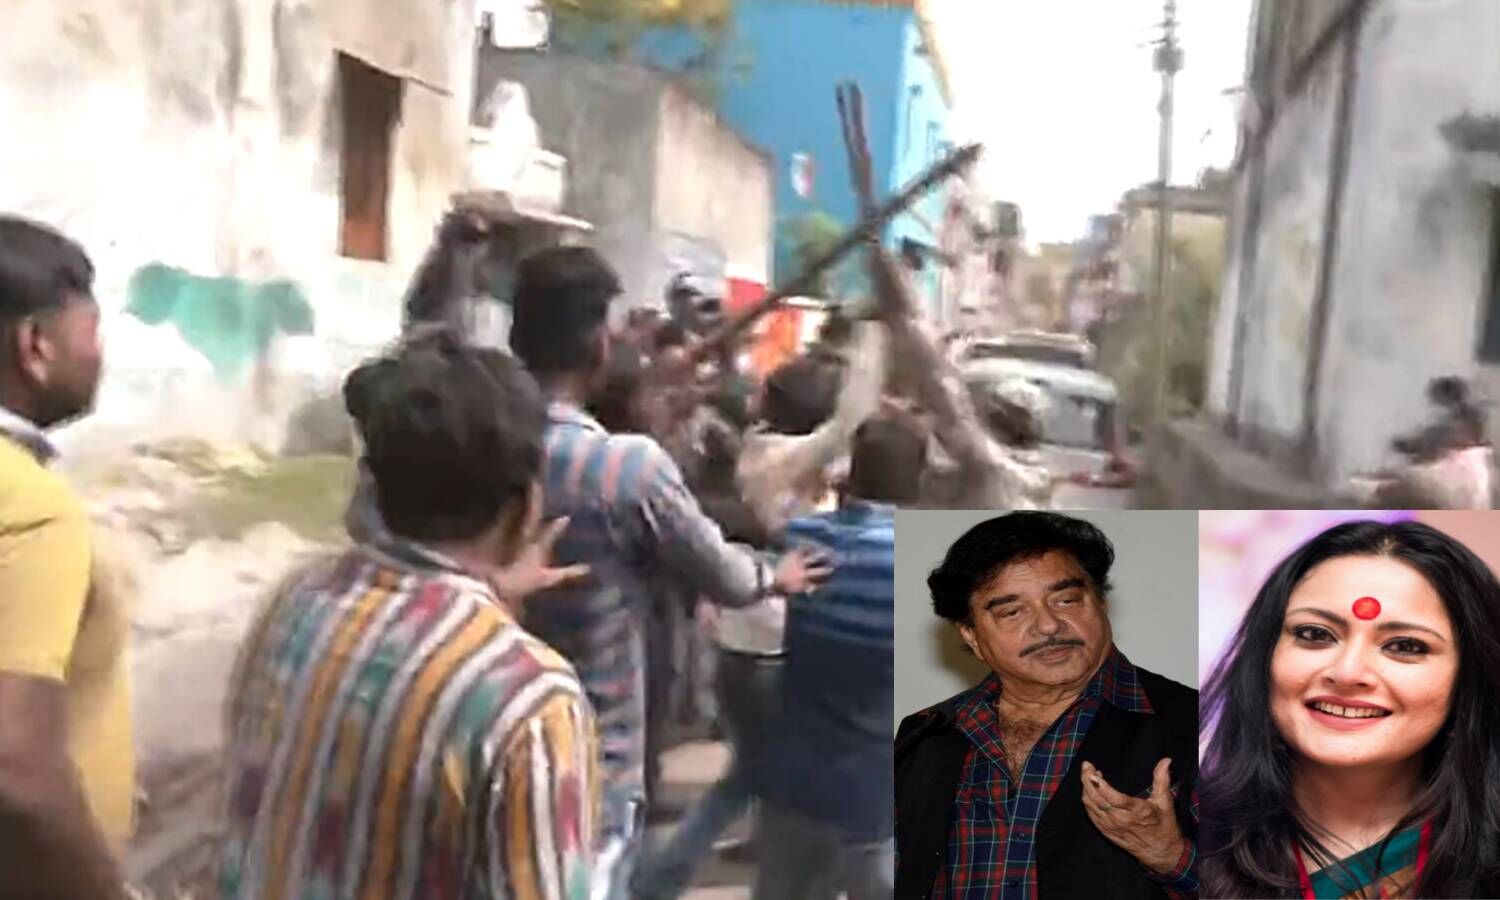 Asansol Bypolls News : भाजपा उम्मीदवार का आरोप टीएमसी के लोगों ने लाठी-ठंडों से किया हमला, जवानों ने हटाया तो बोले- मार सा** को मार